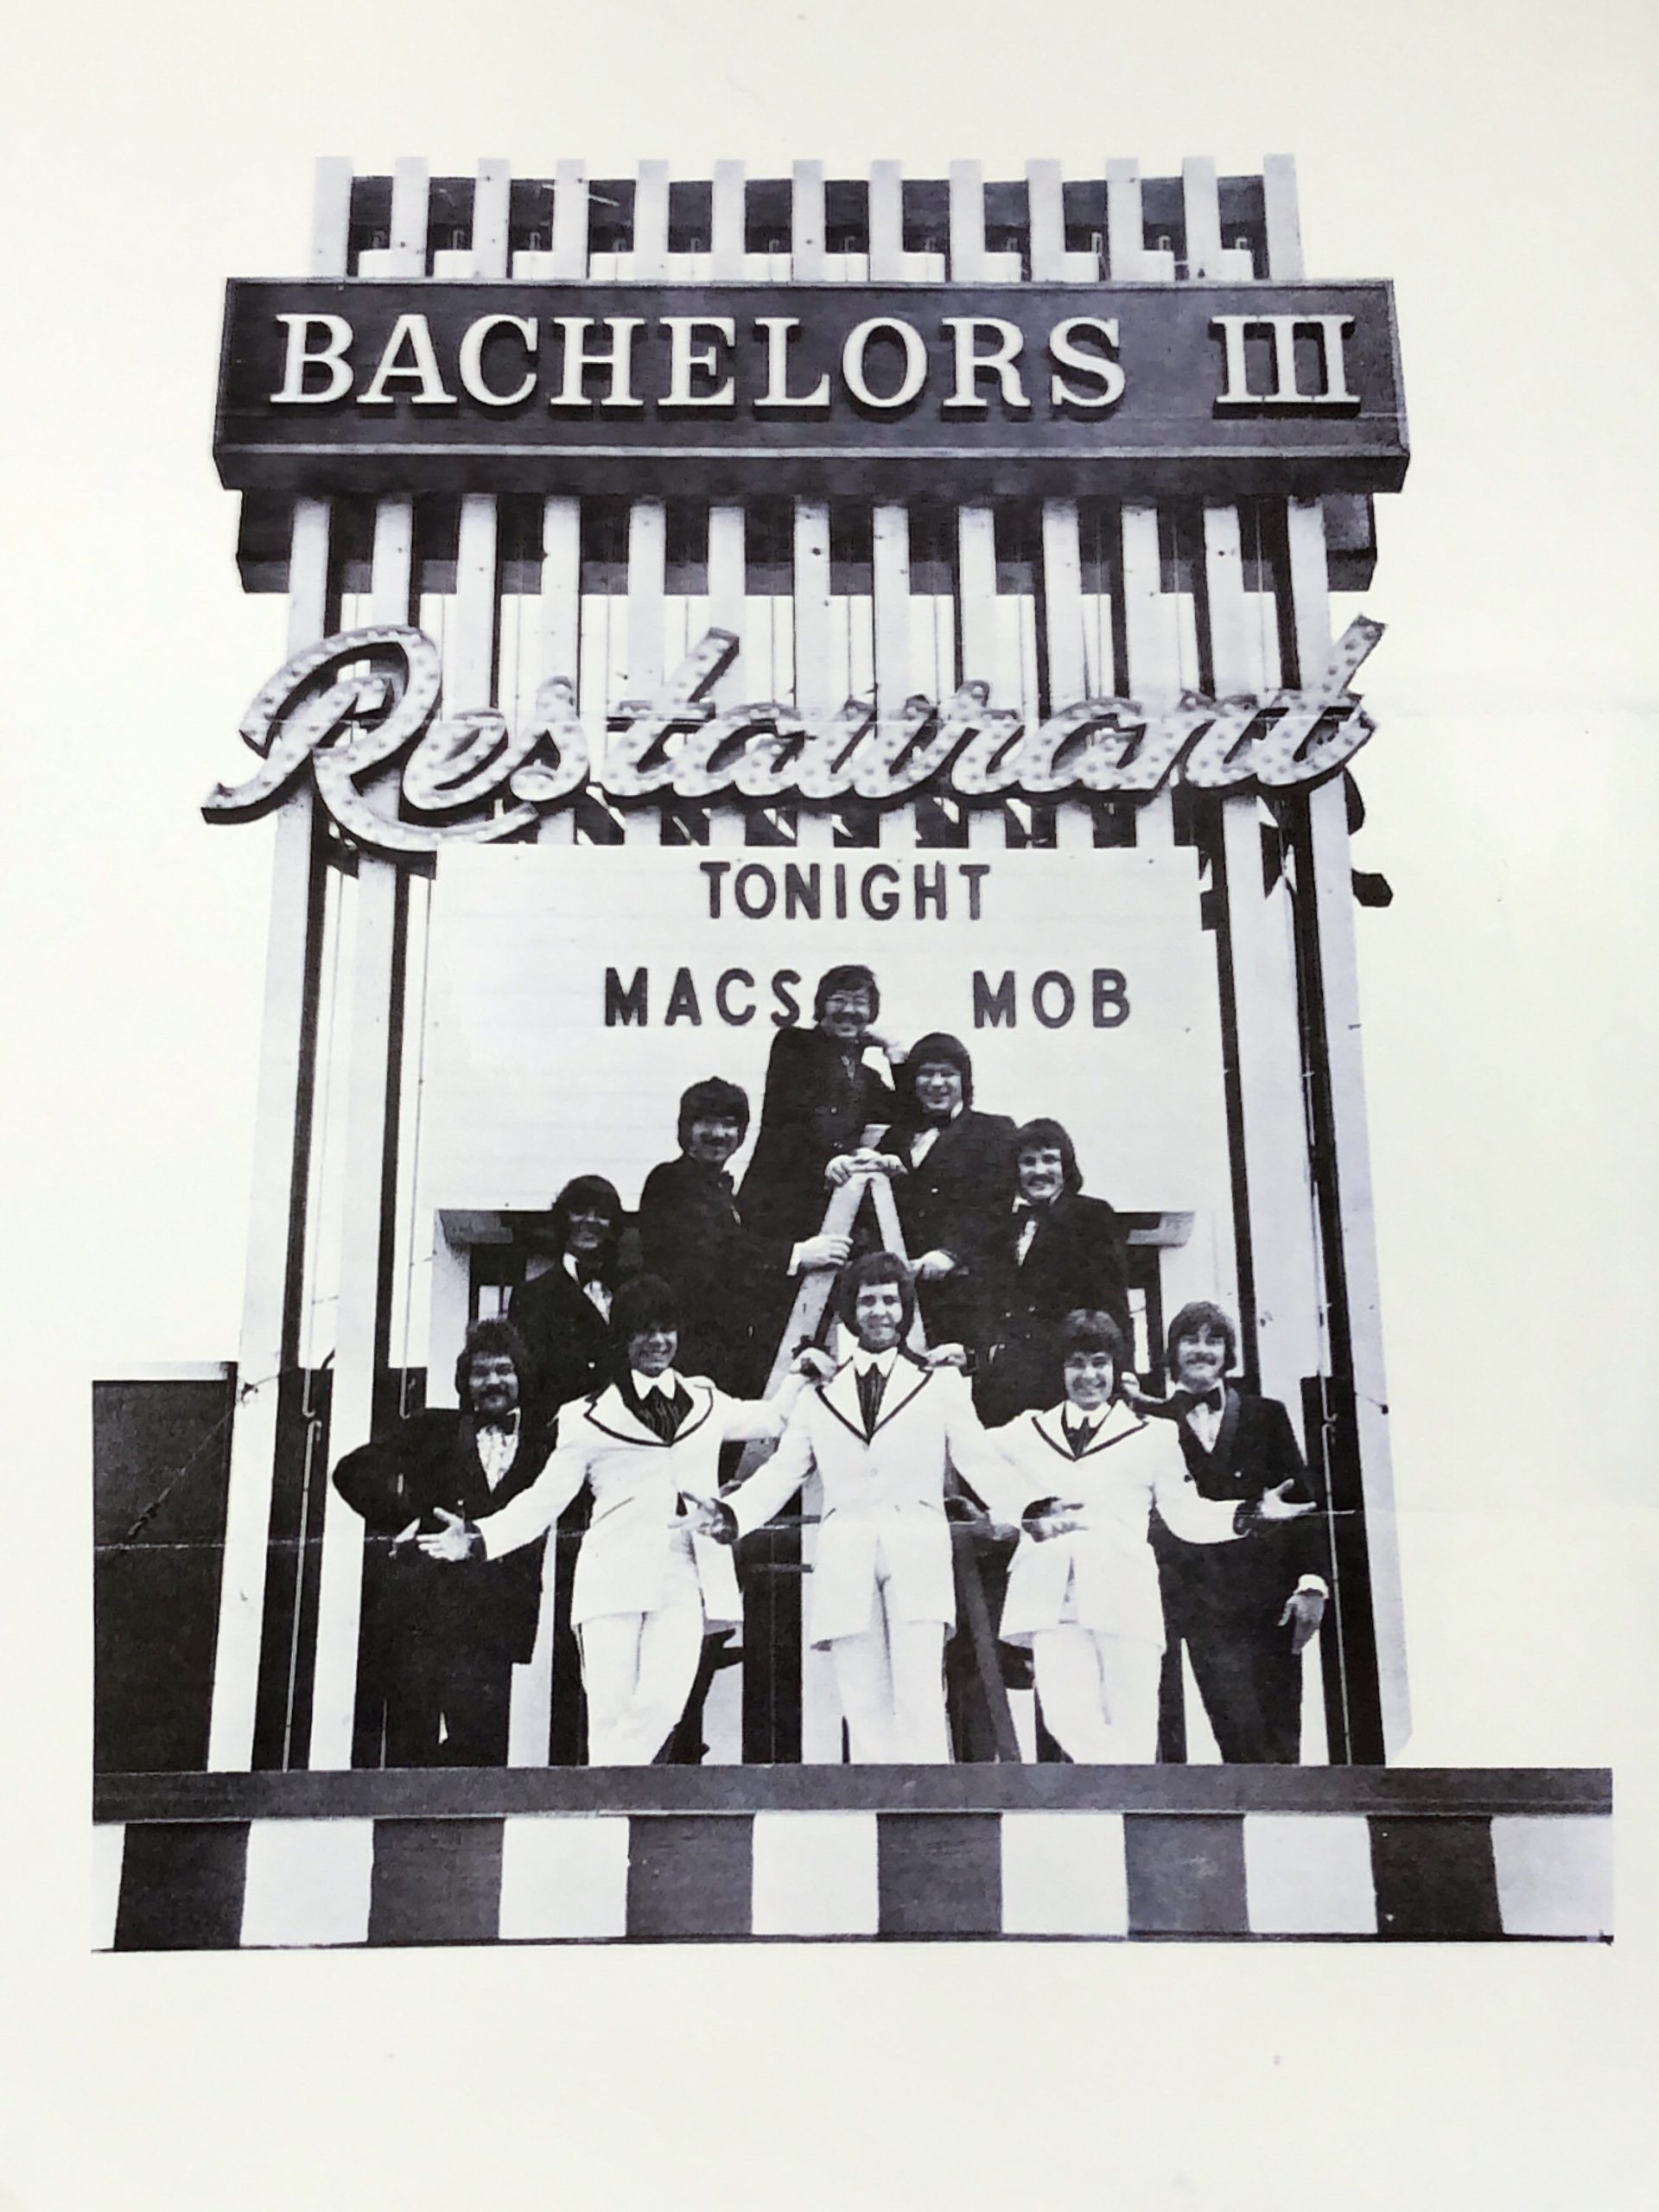 Mac's Mob at the Bachelors III